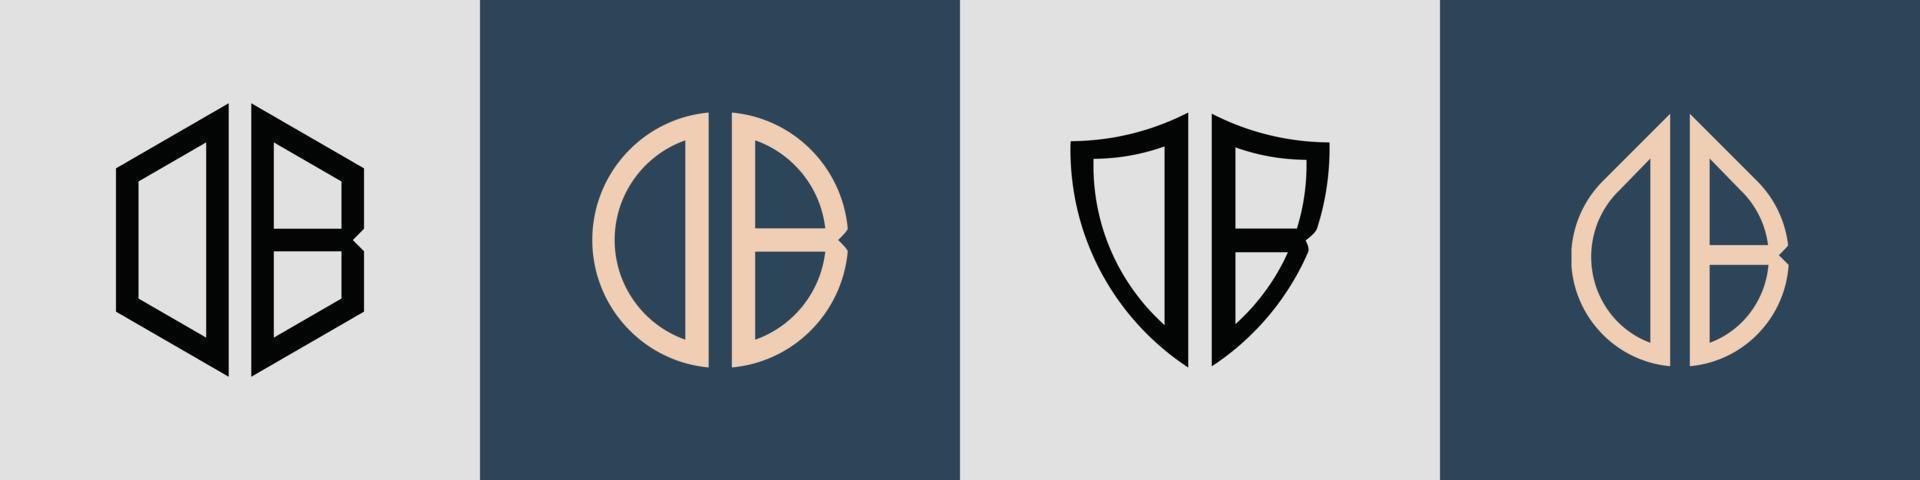 kreativa enkla initiala bokstäver db logo designs bunt. vektor